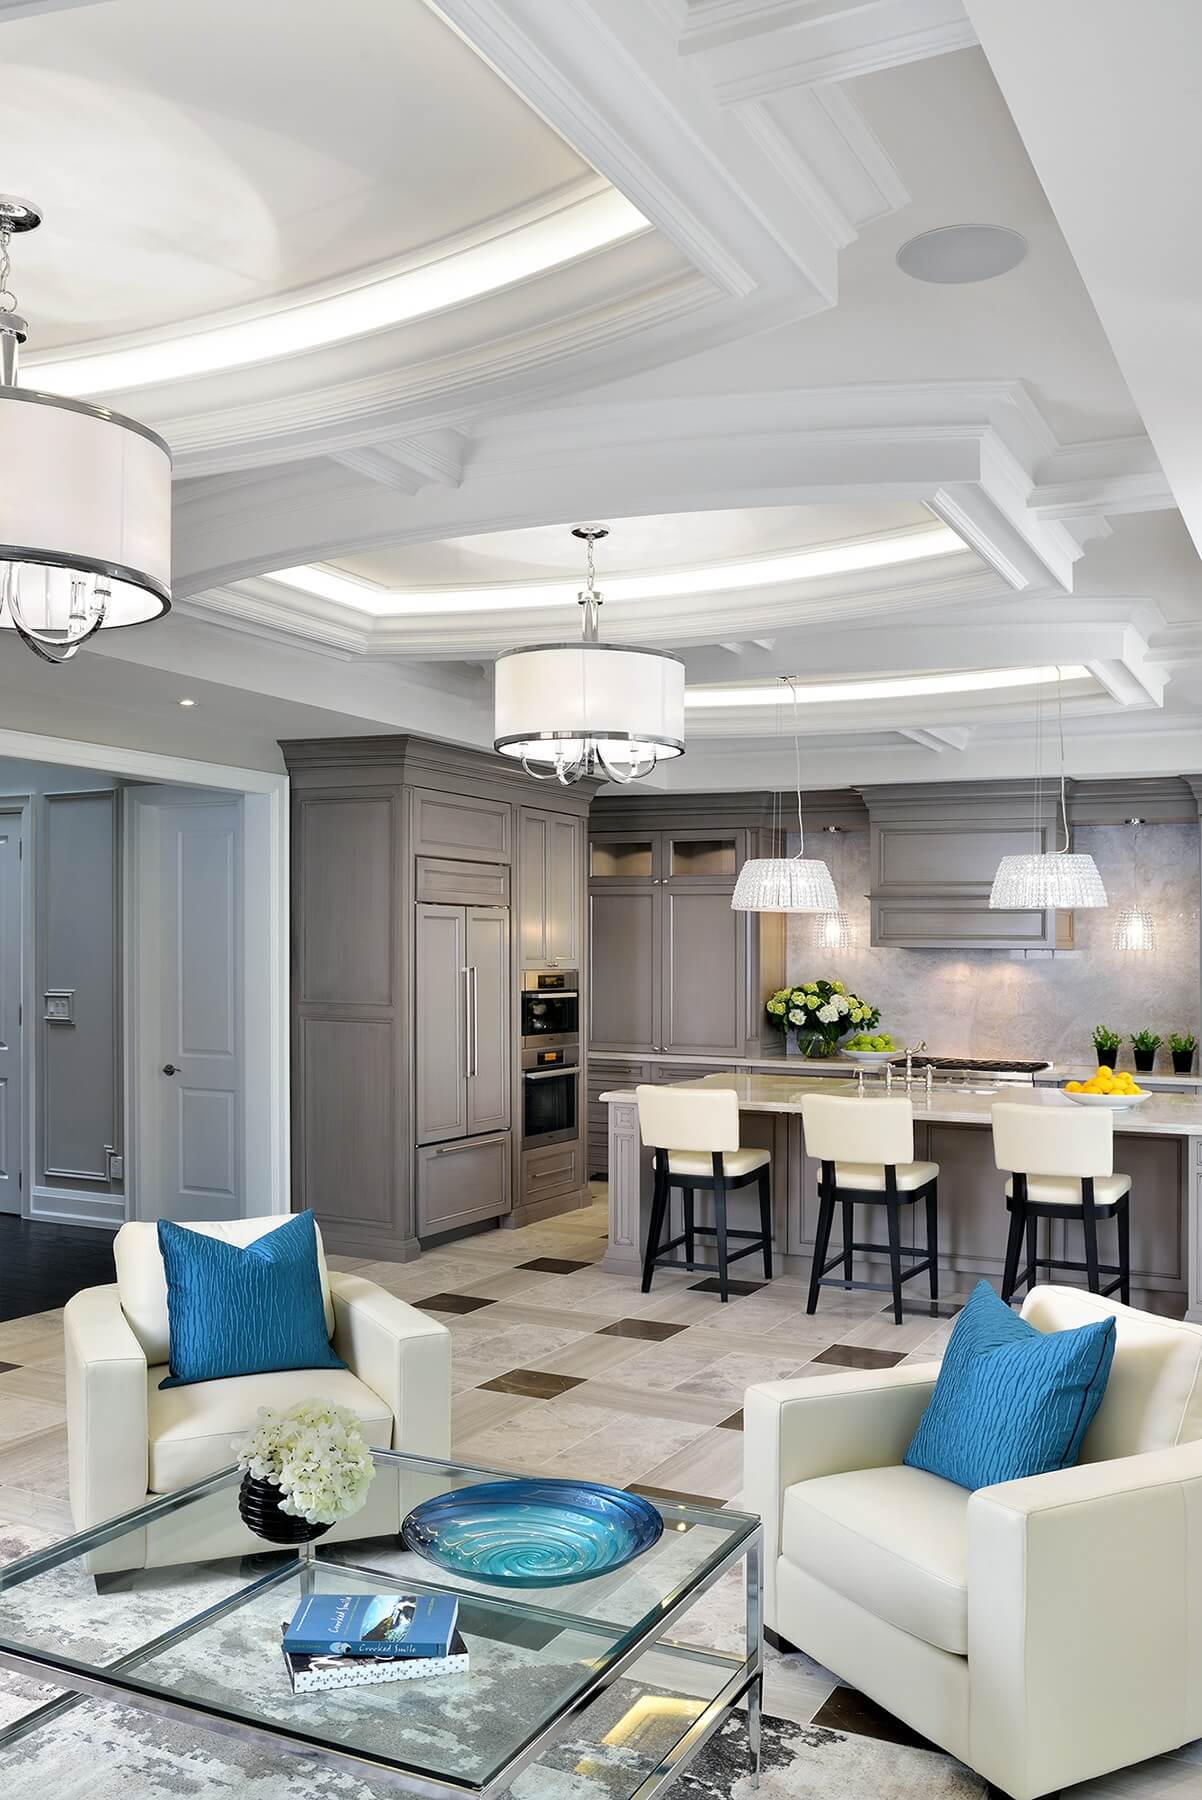 中央开放空间共用客厅和厨房，大面积的瓷砖地板将各种色调的大理石搭配成复杂的图案。白色皮革扶手椅在中性主题中闪耀着大胆的蓝色。